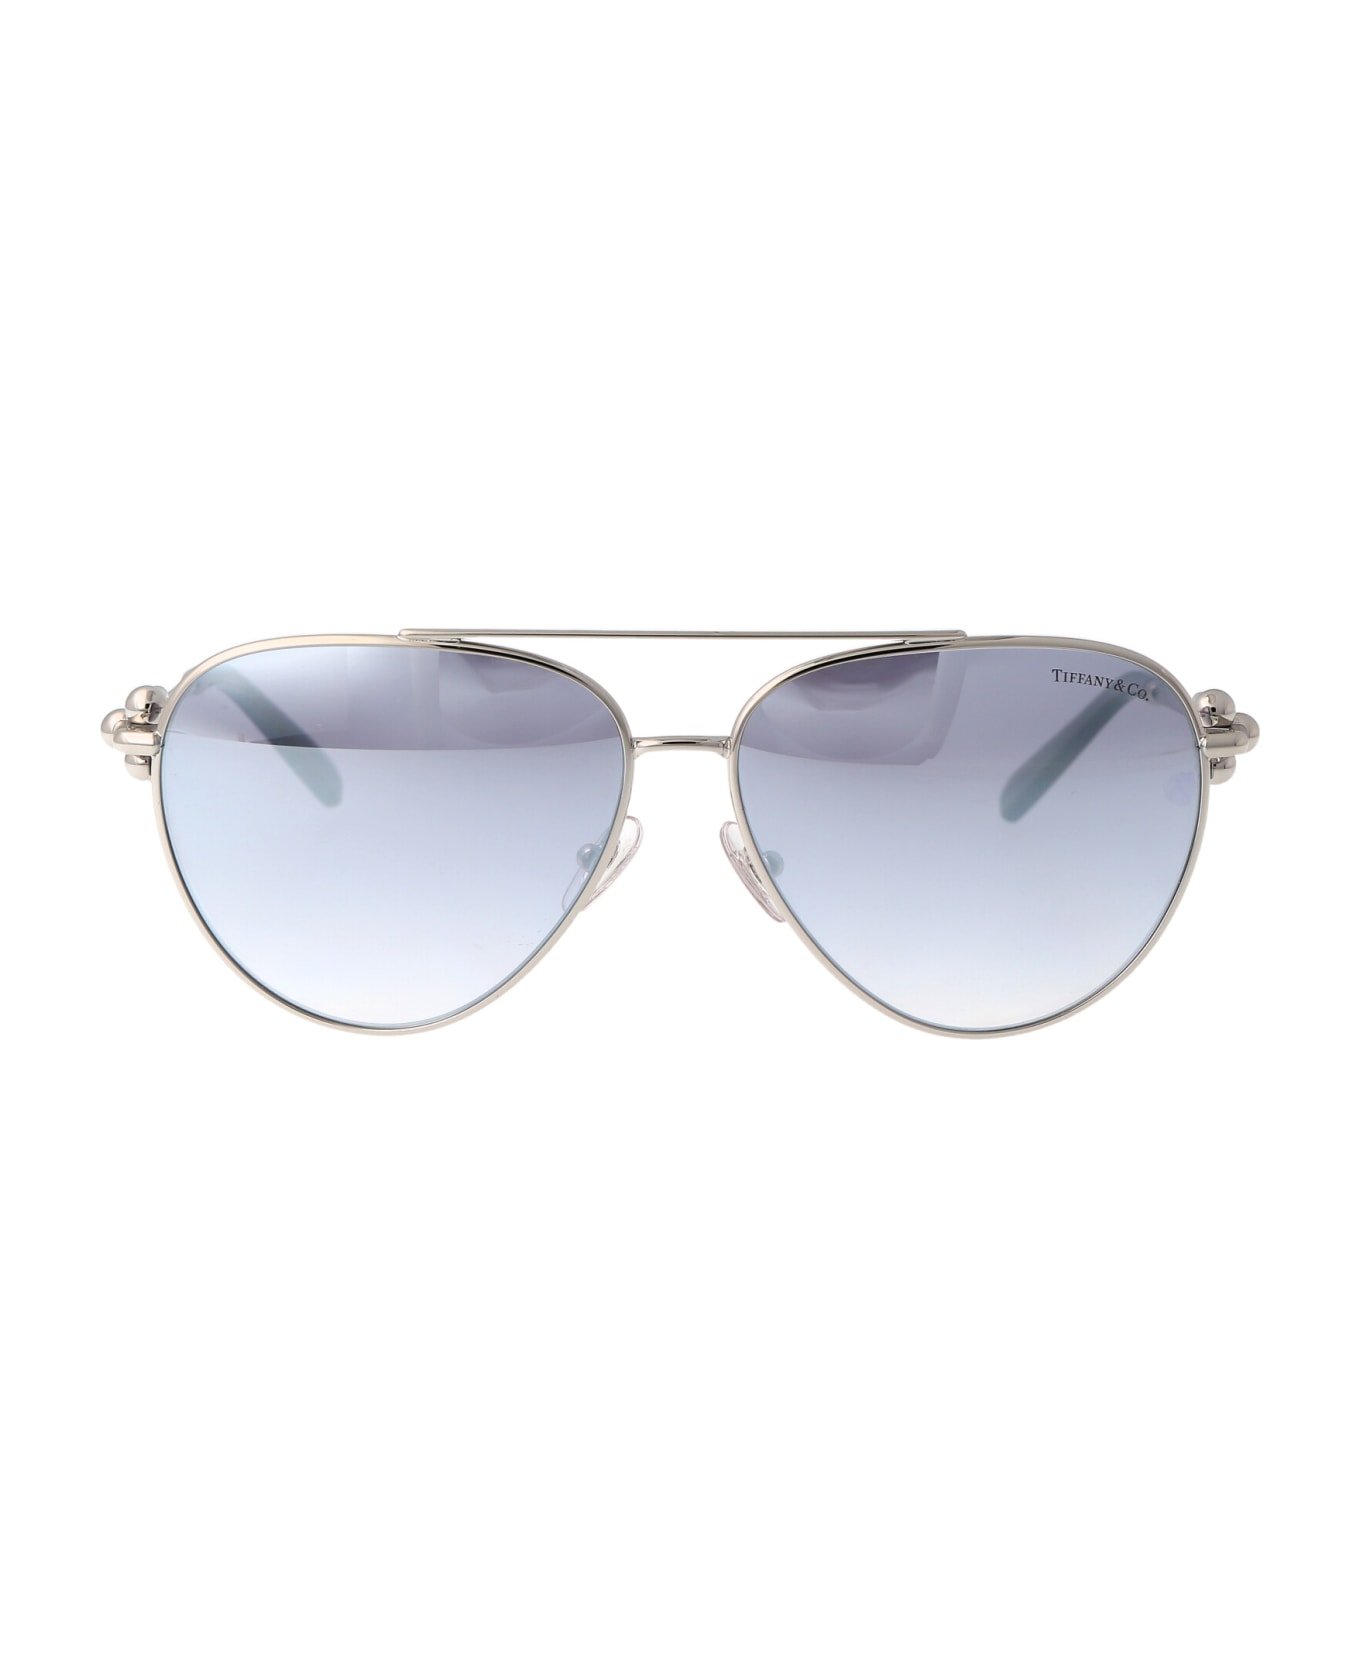 Tiffany & Co. 0tf3092 Sunglasses - 6175V6 Silver